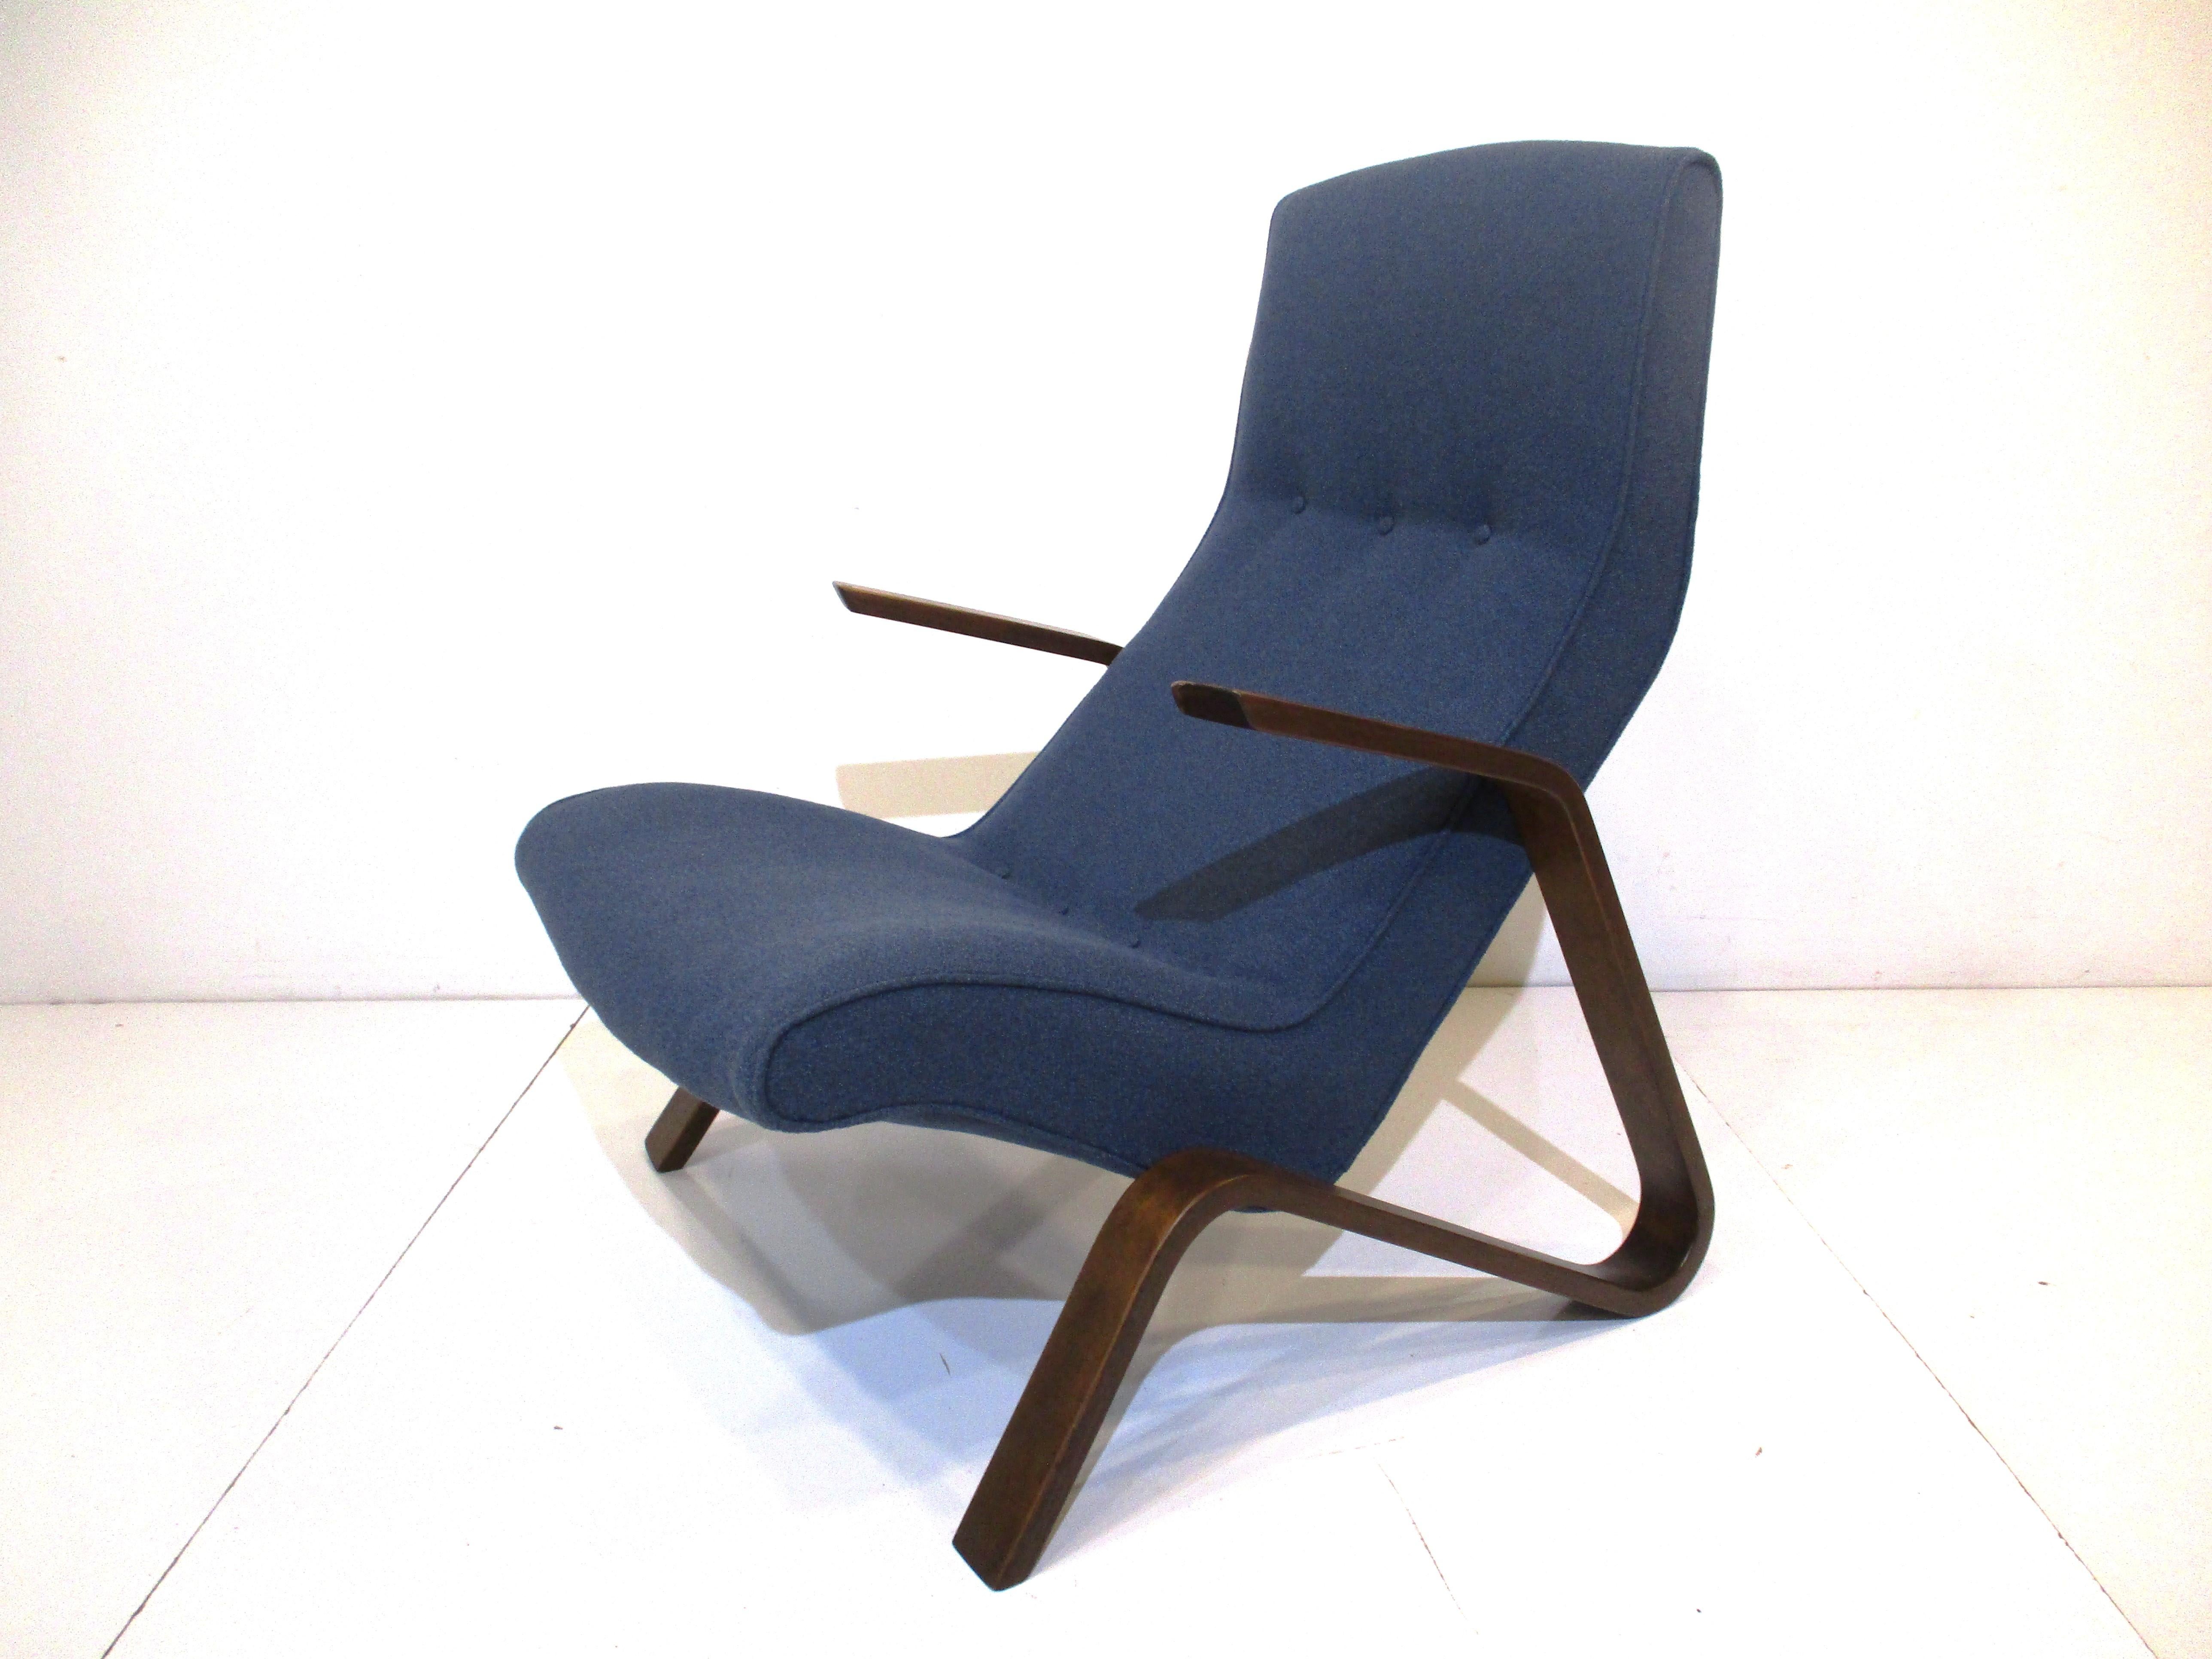  Ein klassischer Vintage Grasshopper Lounge Stuhl in einem dunkelblauen grauen Stoff mit dunklen Walnuss getönten skulpturalen Armen und Beinen. Dies war einer der ersten superbequemen Stühle, der von dem Künstler, Möbeldesigner und Architekten Eero